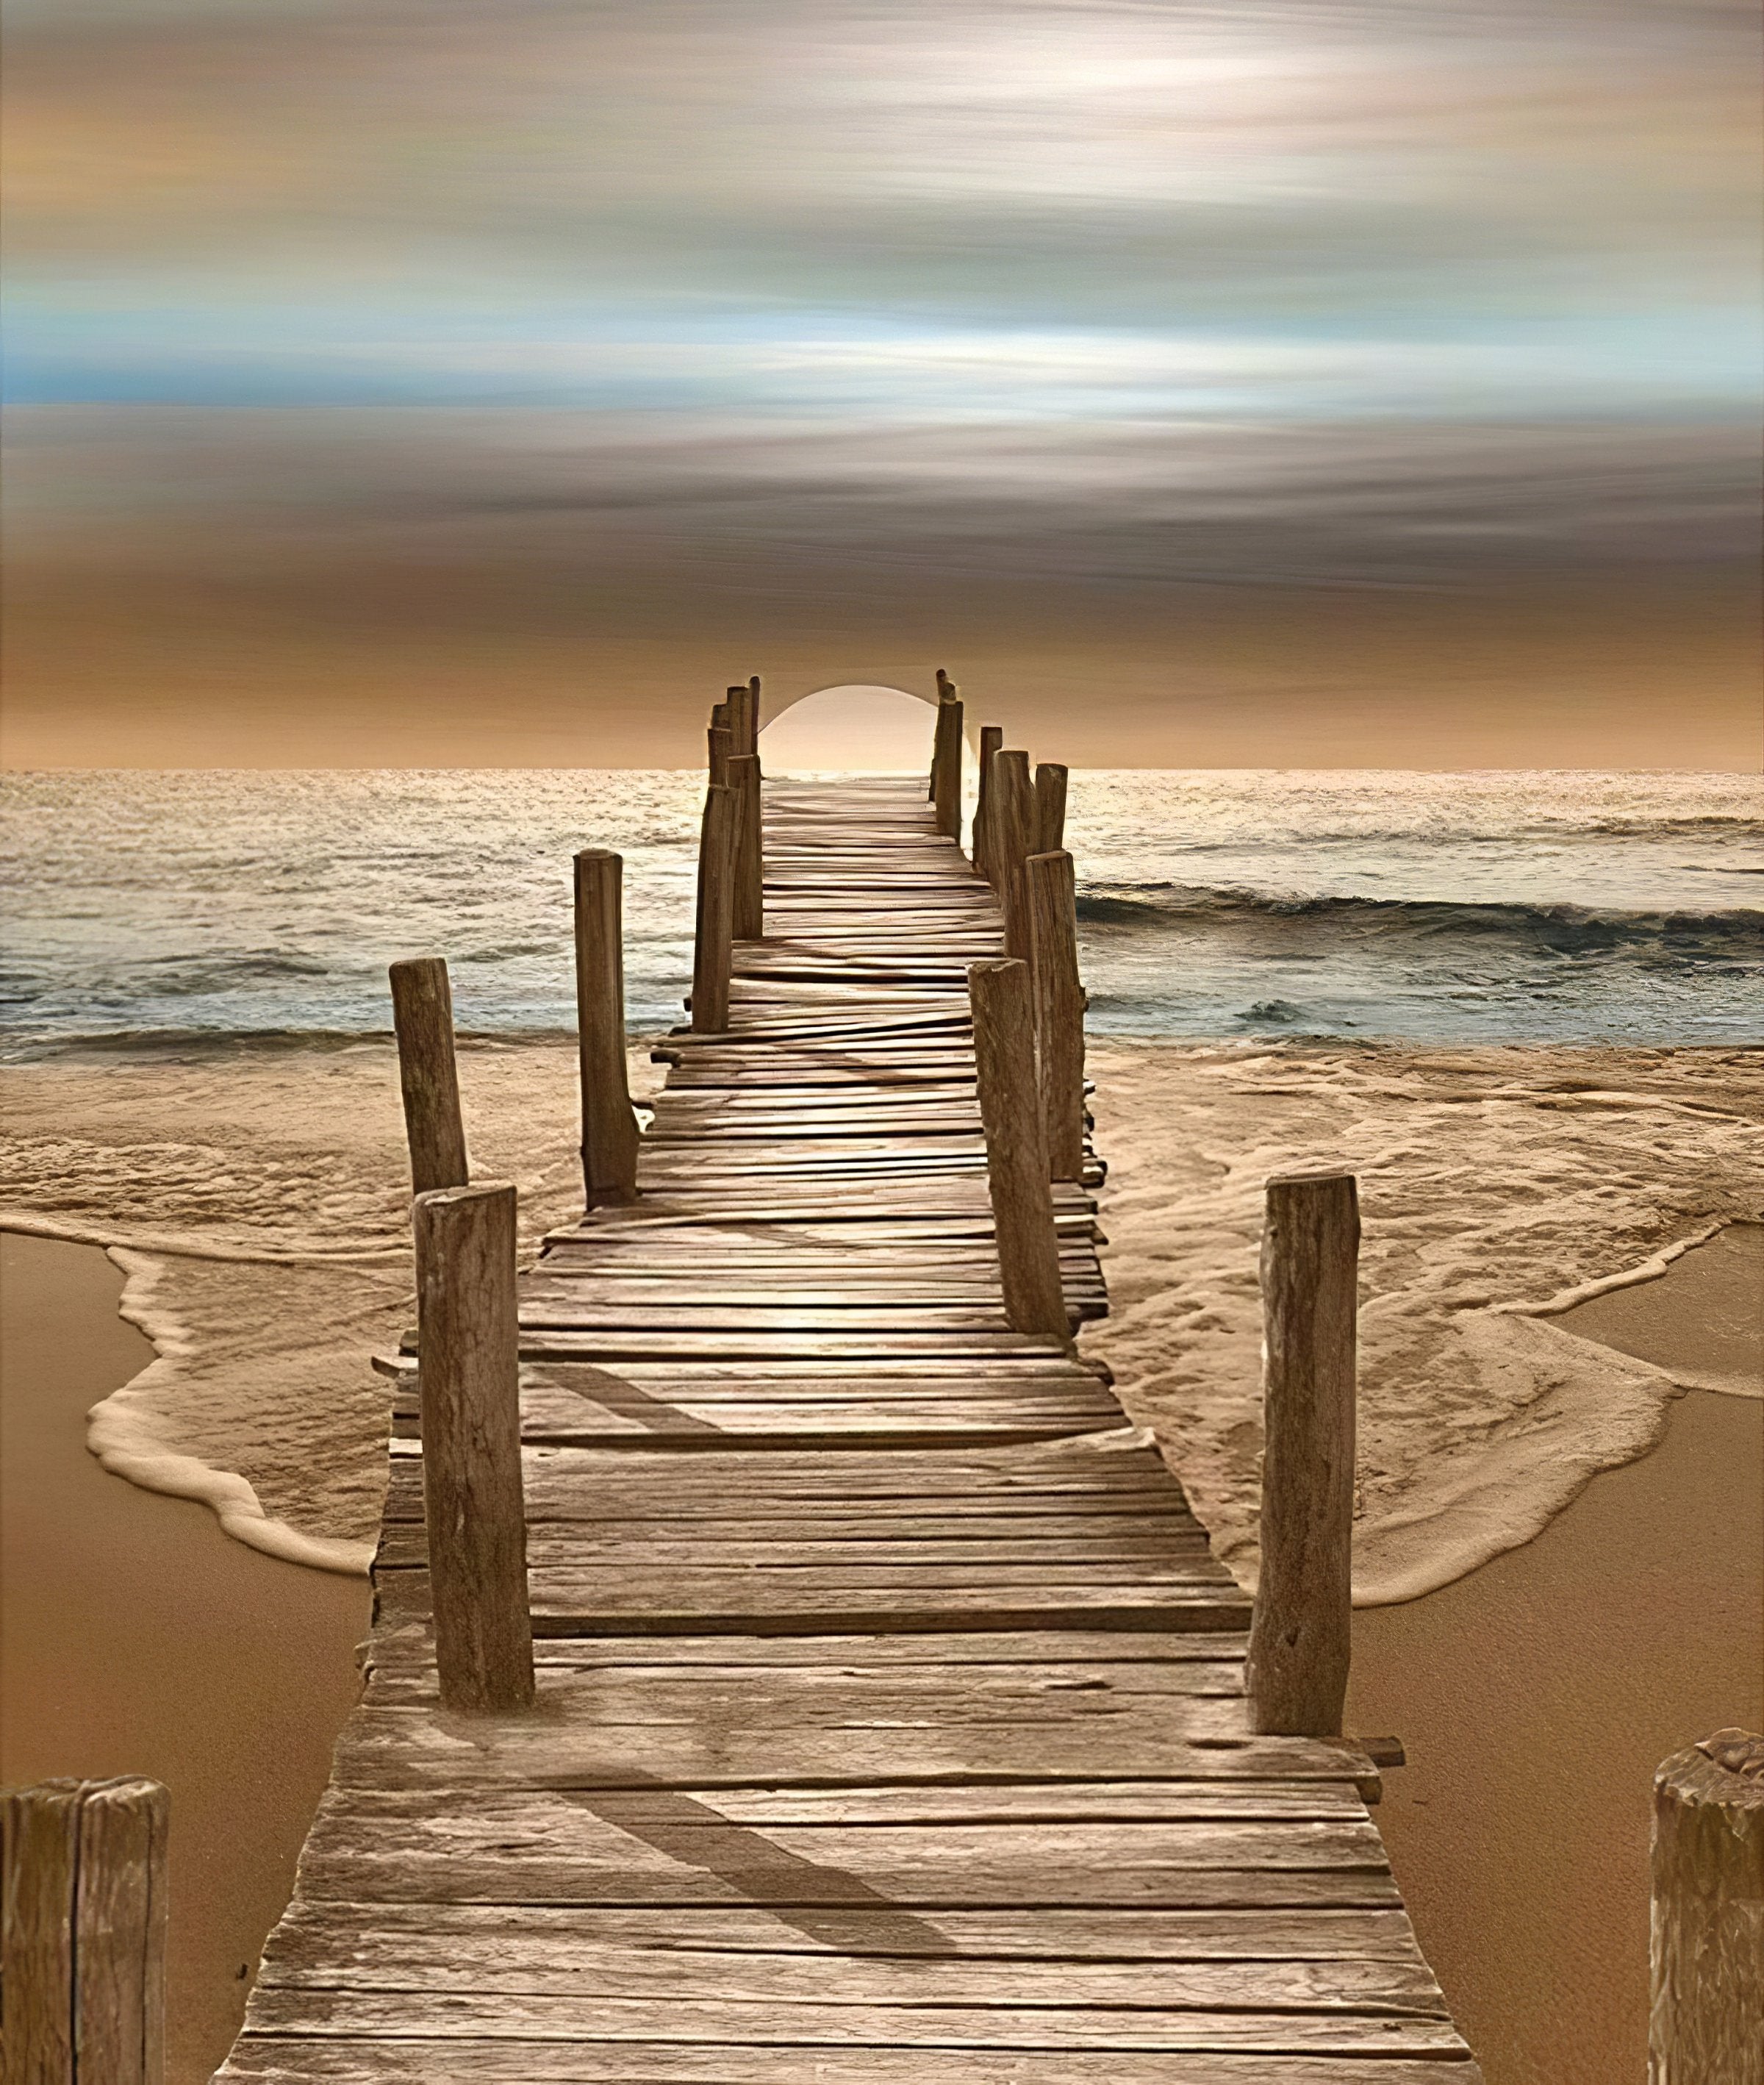 Beach's Bridge: Where the sea whispers to the shore. -Diamondartlove